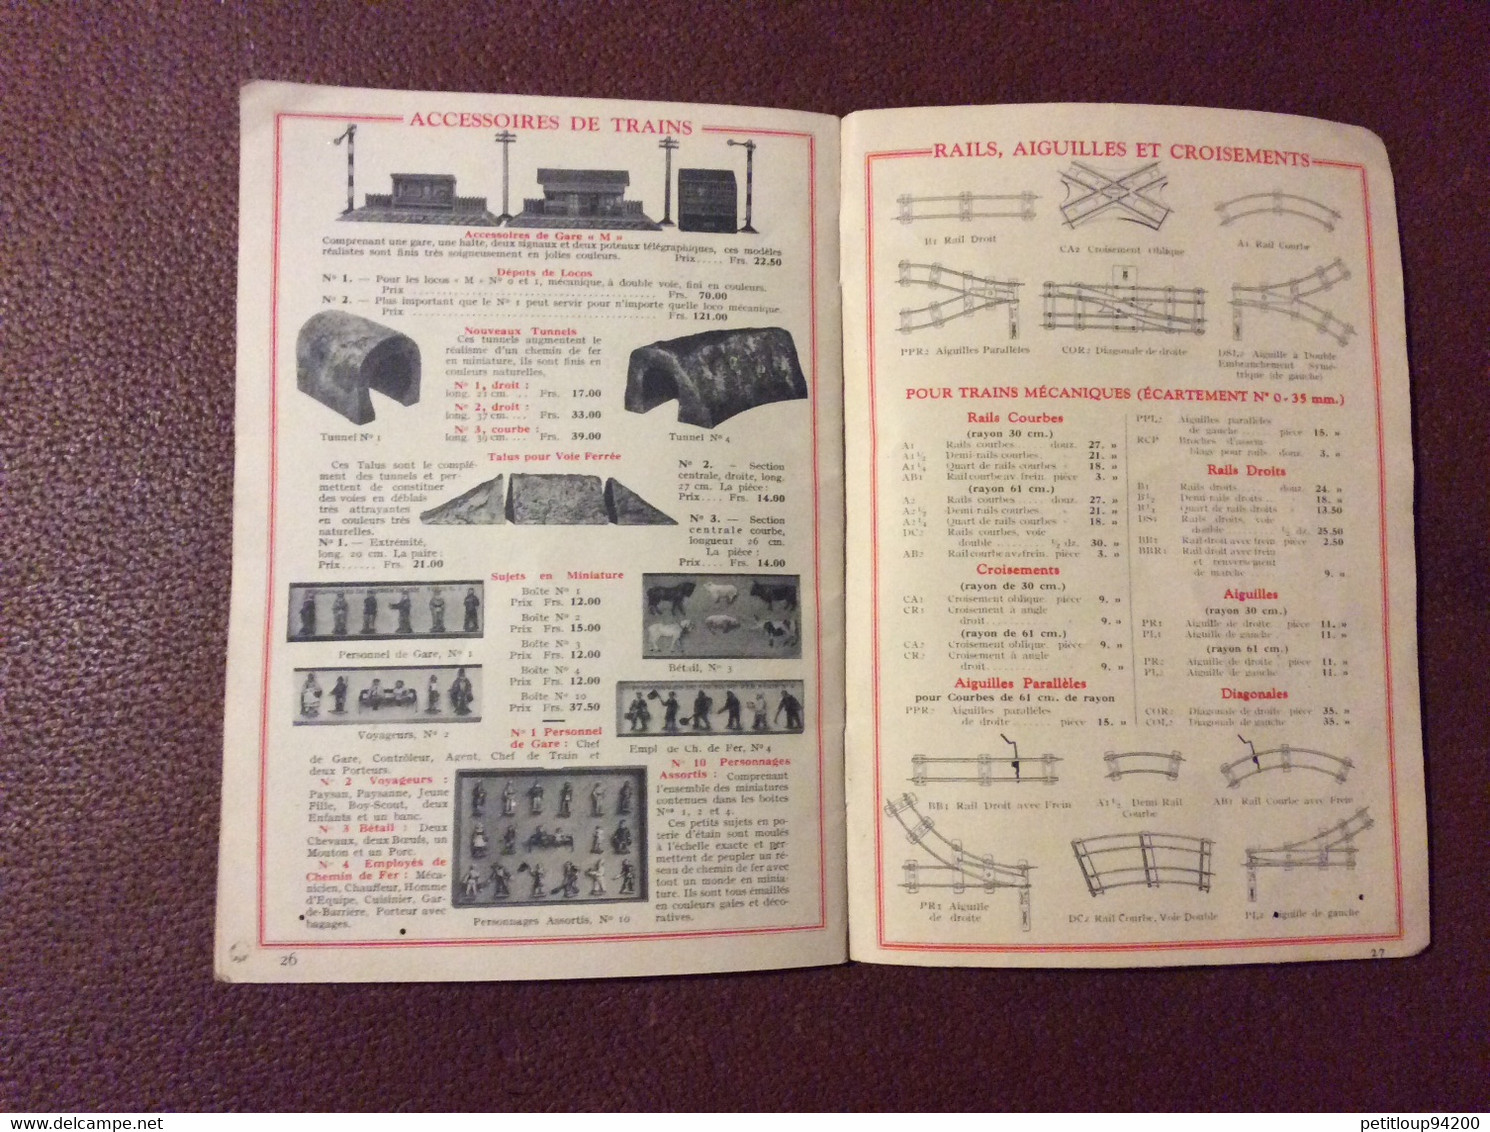 JEU DE CONSTRUCTION  MECCANO + Catalogue MECCANO & Trains HORNBY + Valise  ANNEES 1930